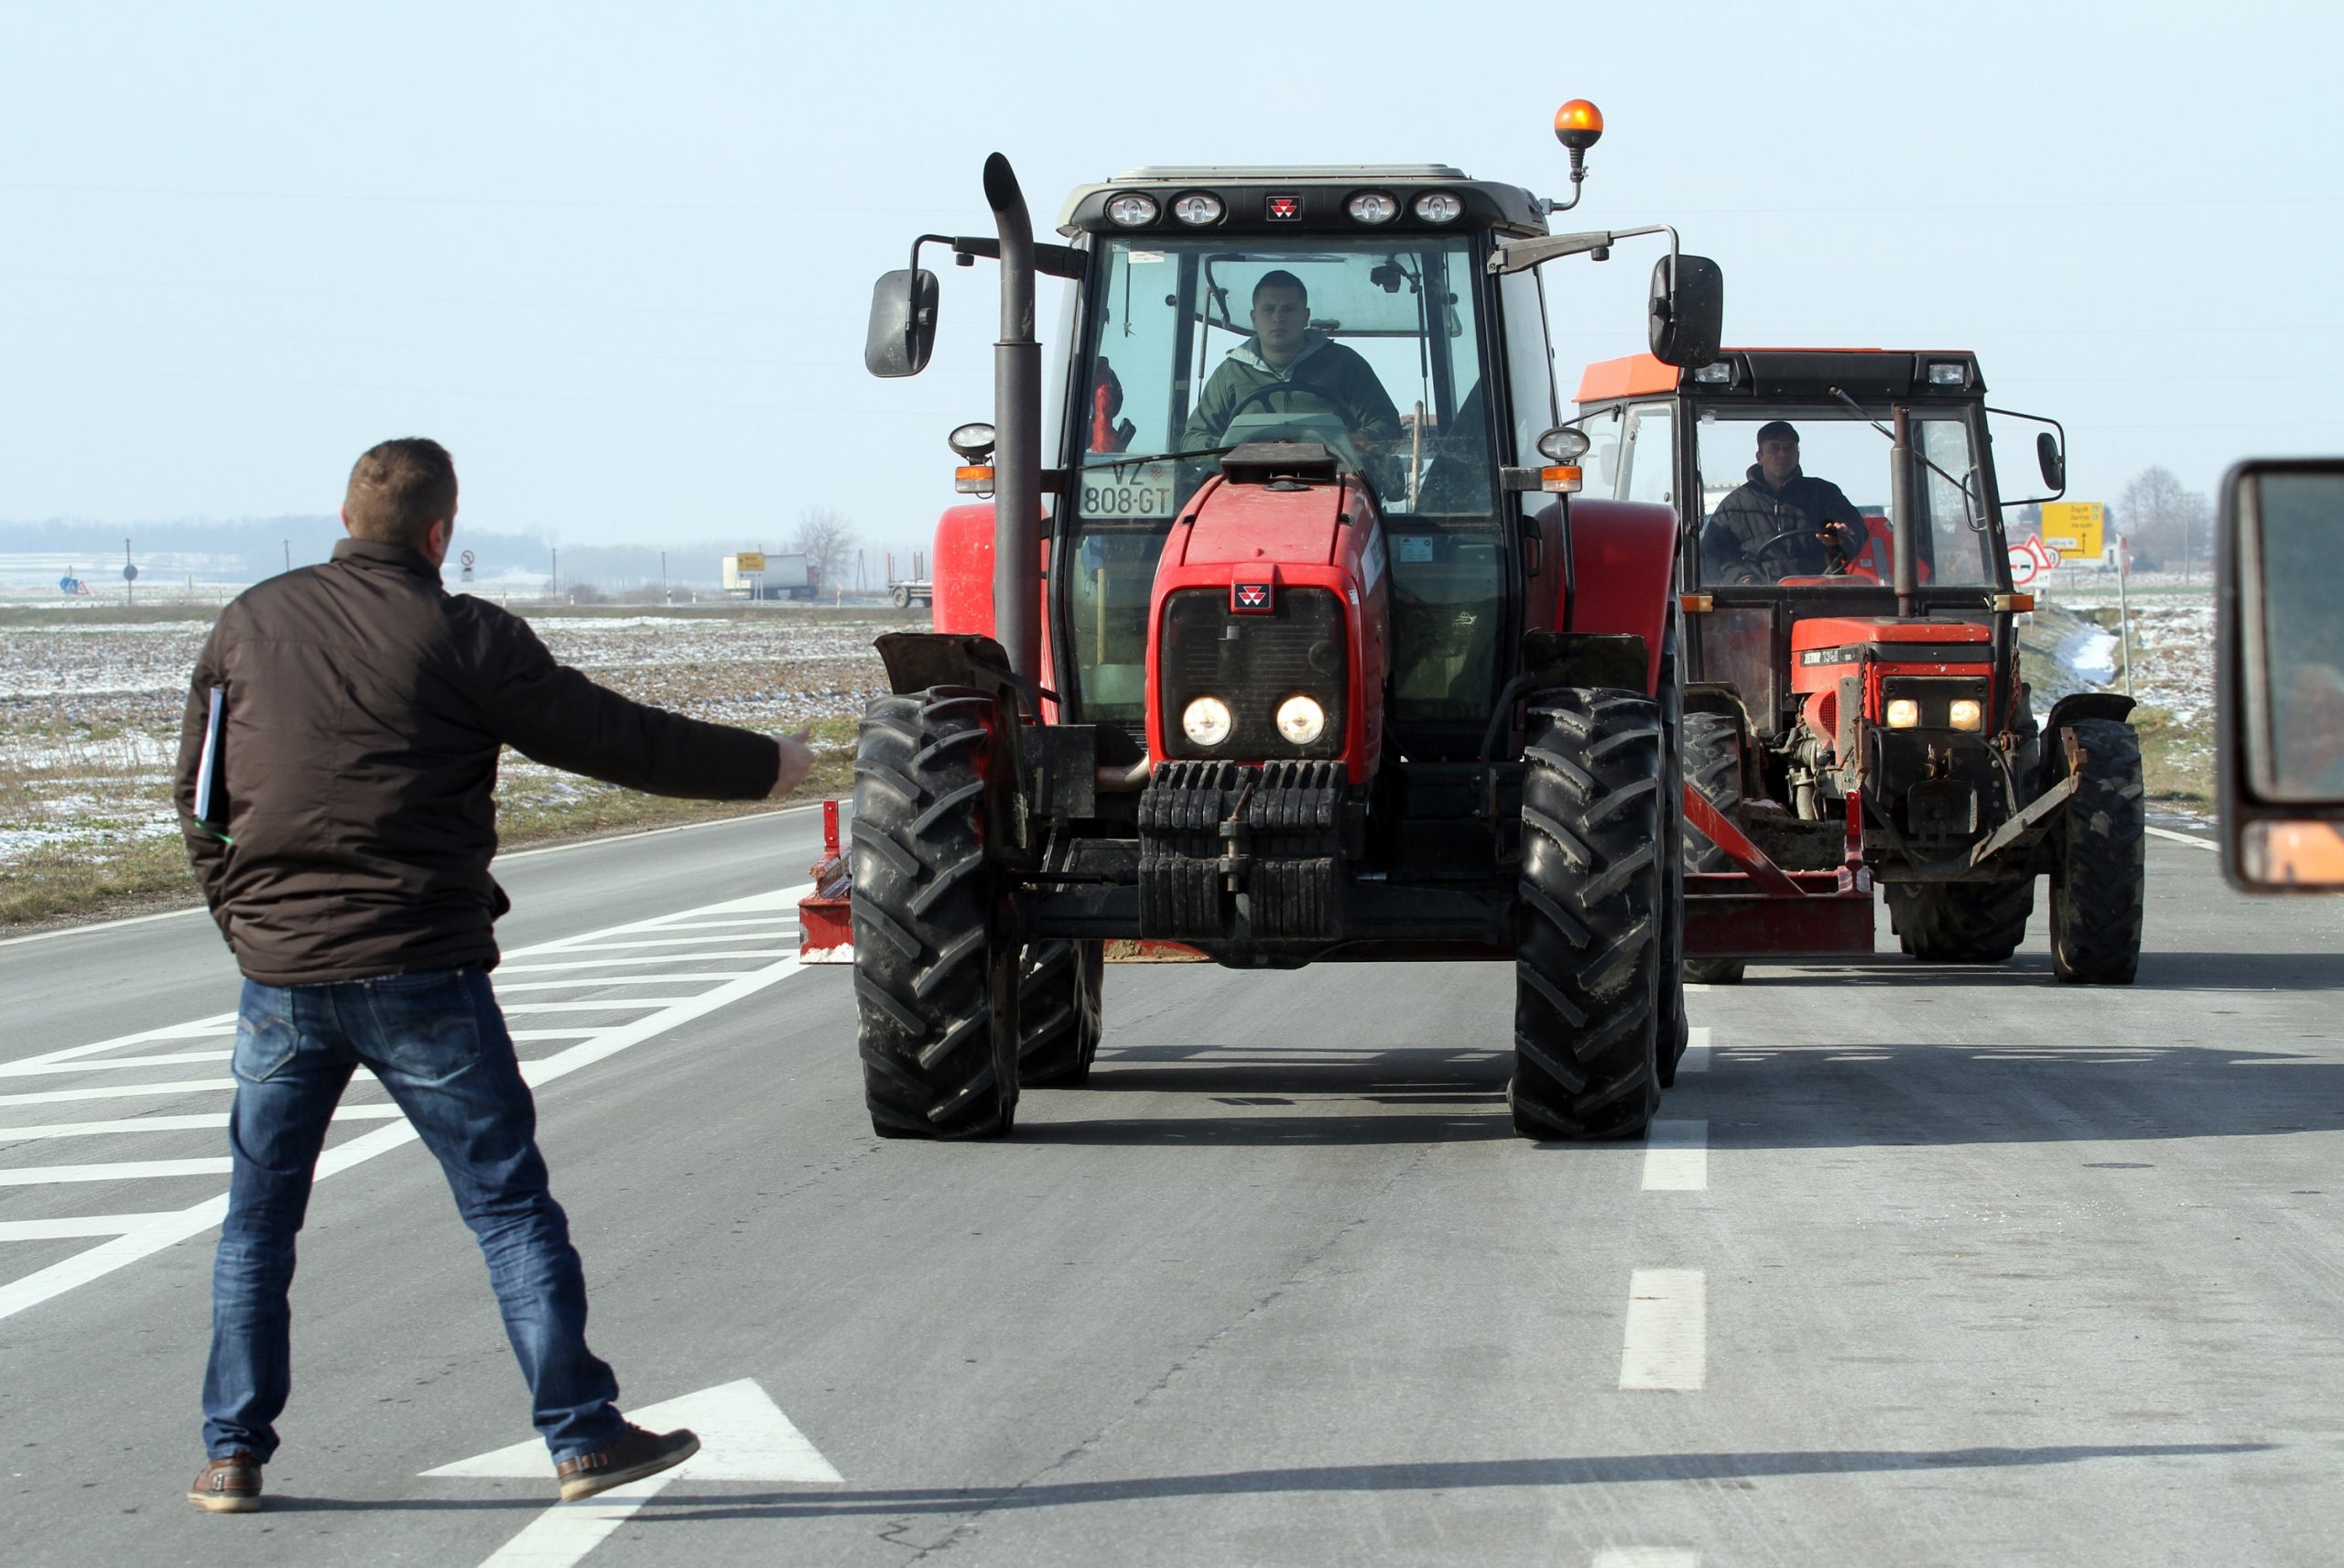 11.02.2013., Ludbreg - Tridesetak poljoprivrednika traktorima je blokiralo sjeverni kolni trak na drzavnoj cesti D2 kod Ludbrega. Traze isplatu poticaja za 2012 godinu i oslobadjanje komunalnog doprinosa za legalizaciju gospodarskih objekata
Photo: Marko Jurinec/PIXSELL